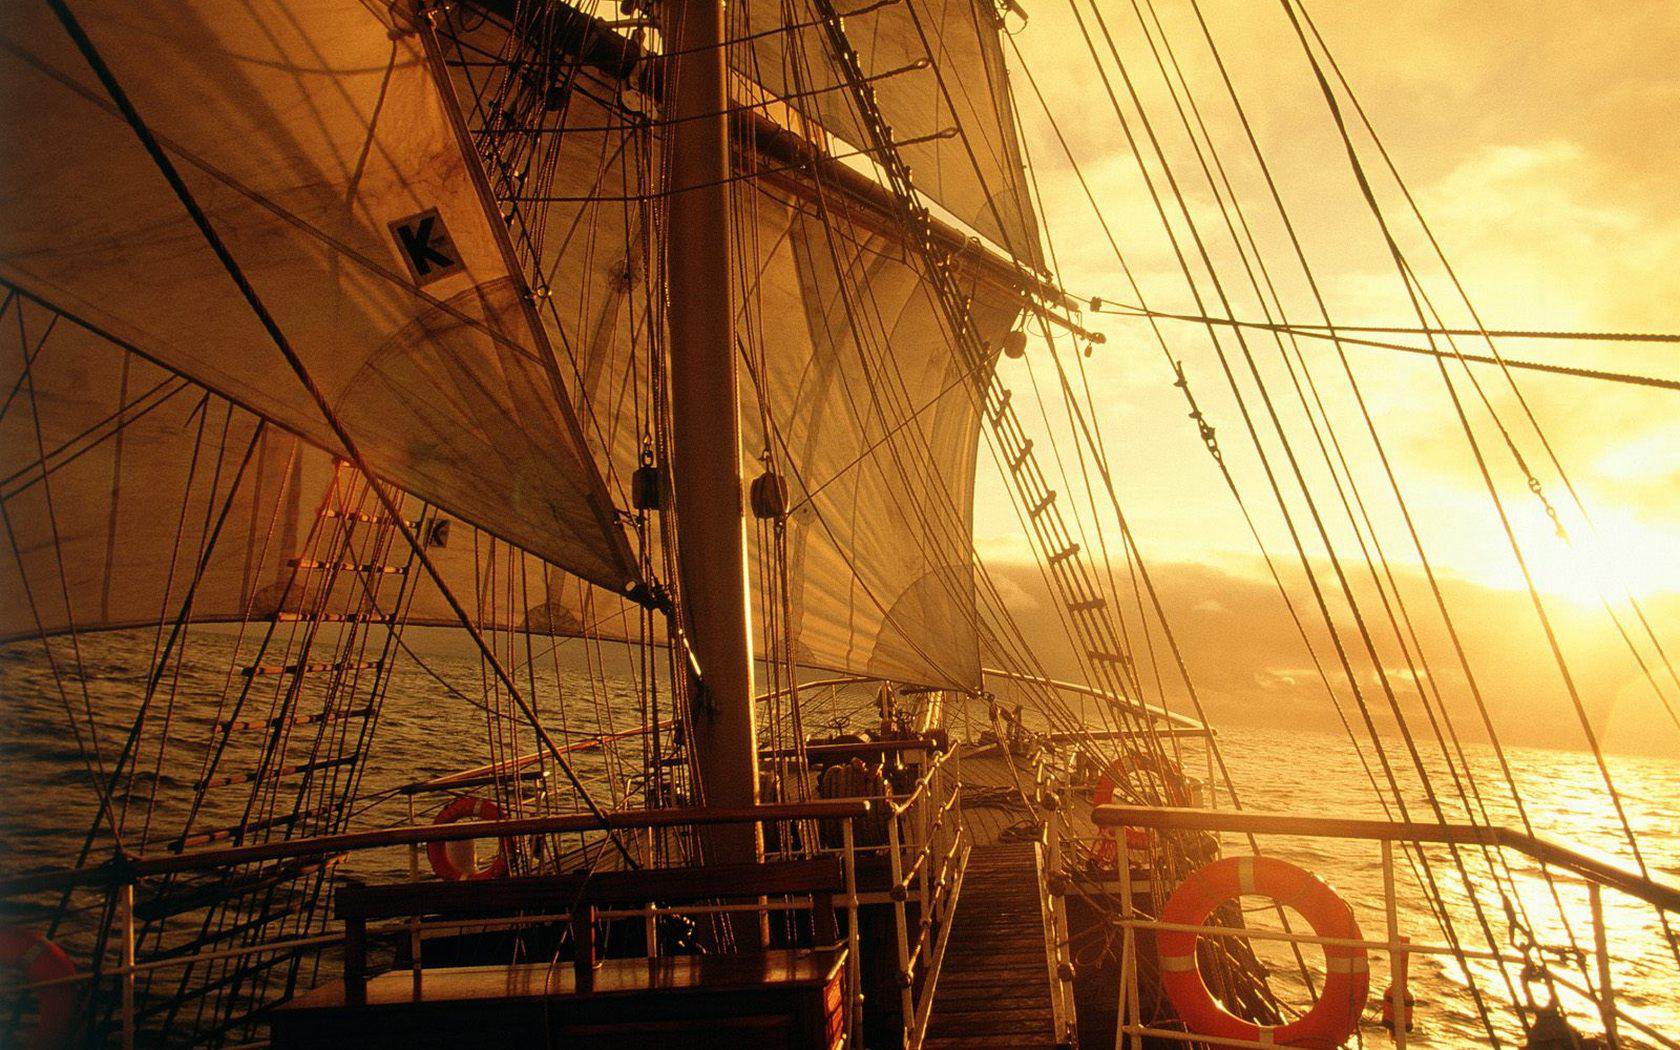 Download HQ Mast Frigates & Sailing ships wallpaper / 1680x1050